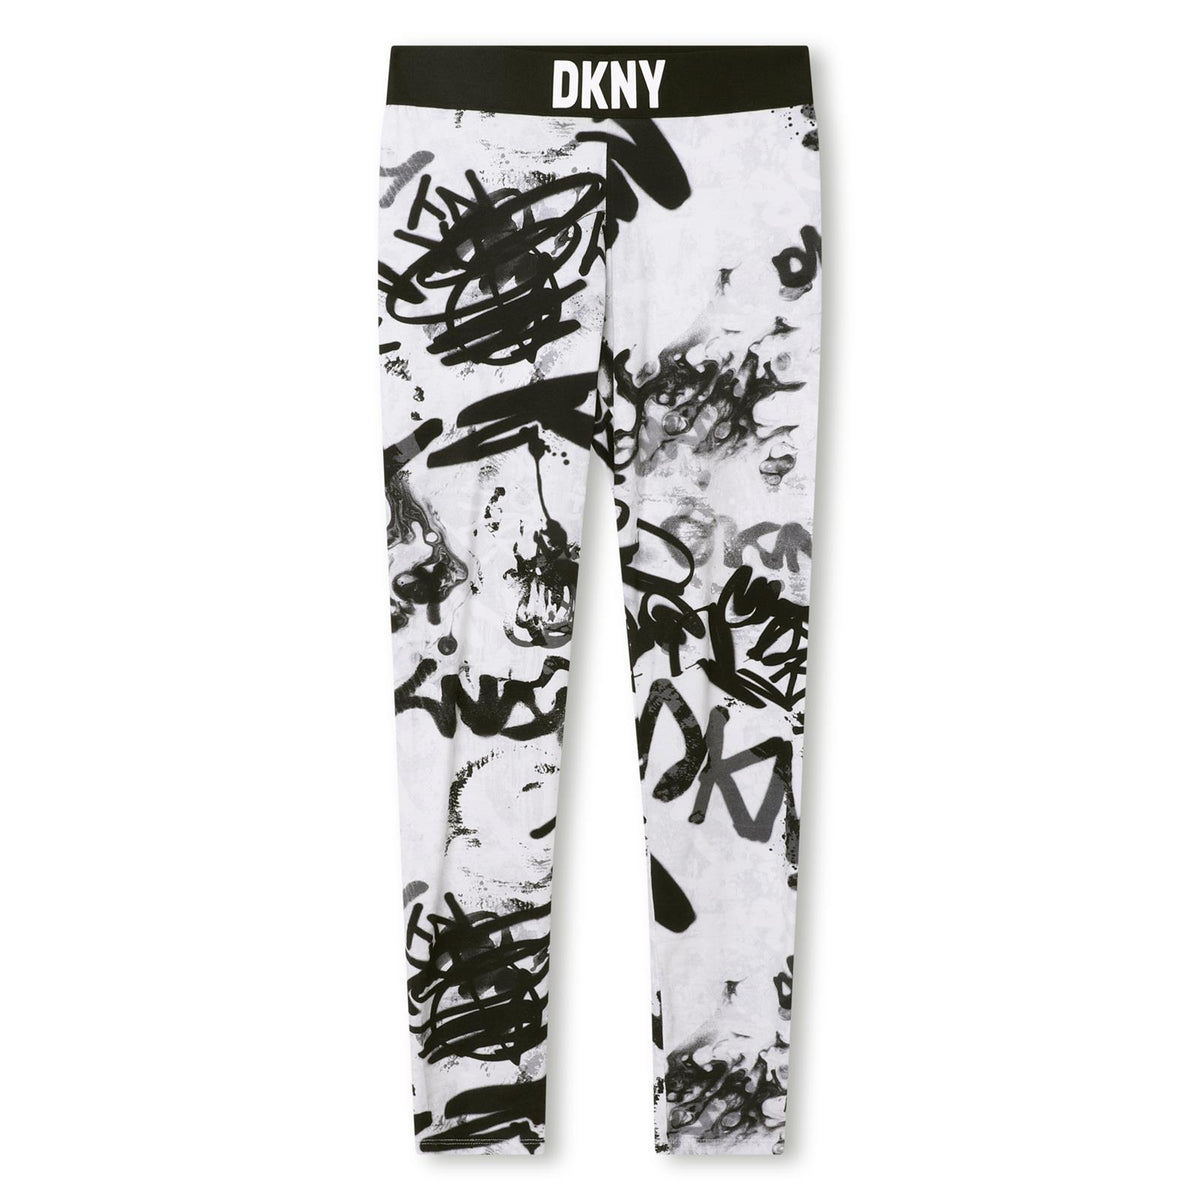 DKNY Graffiti Print Leggings